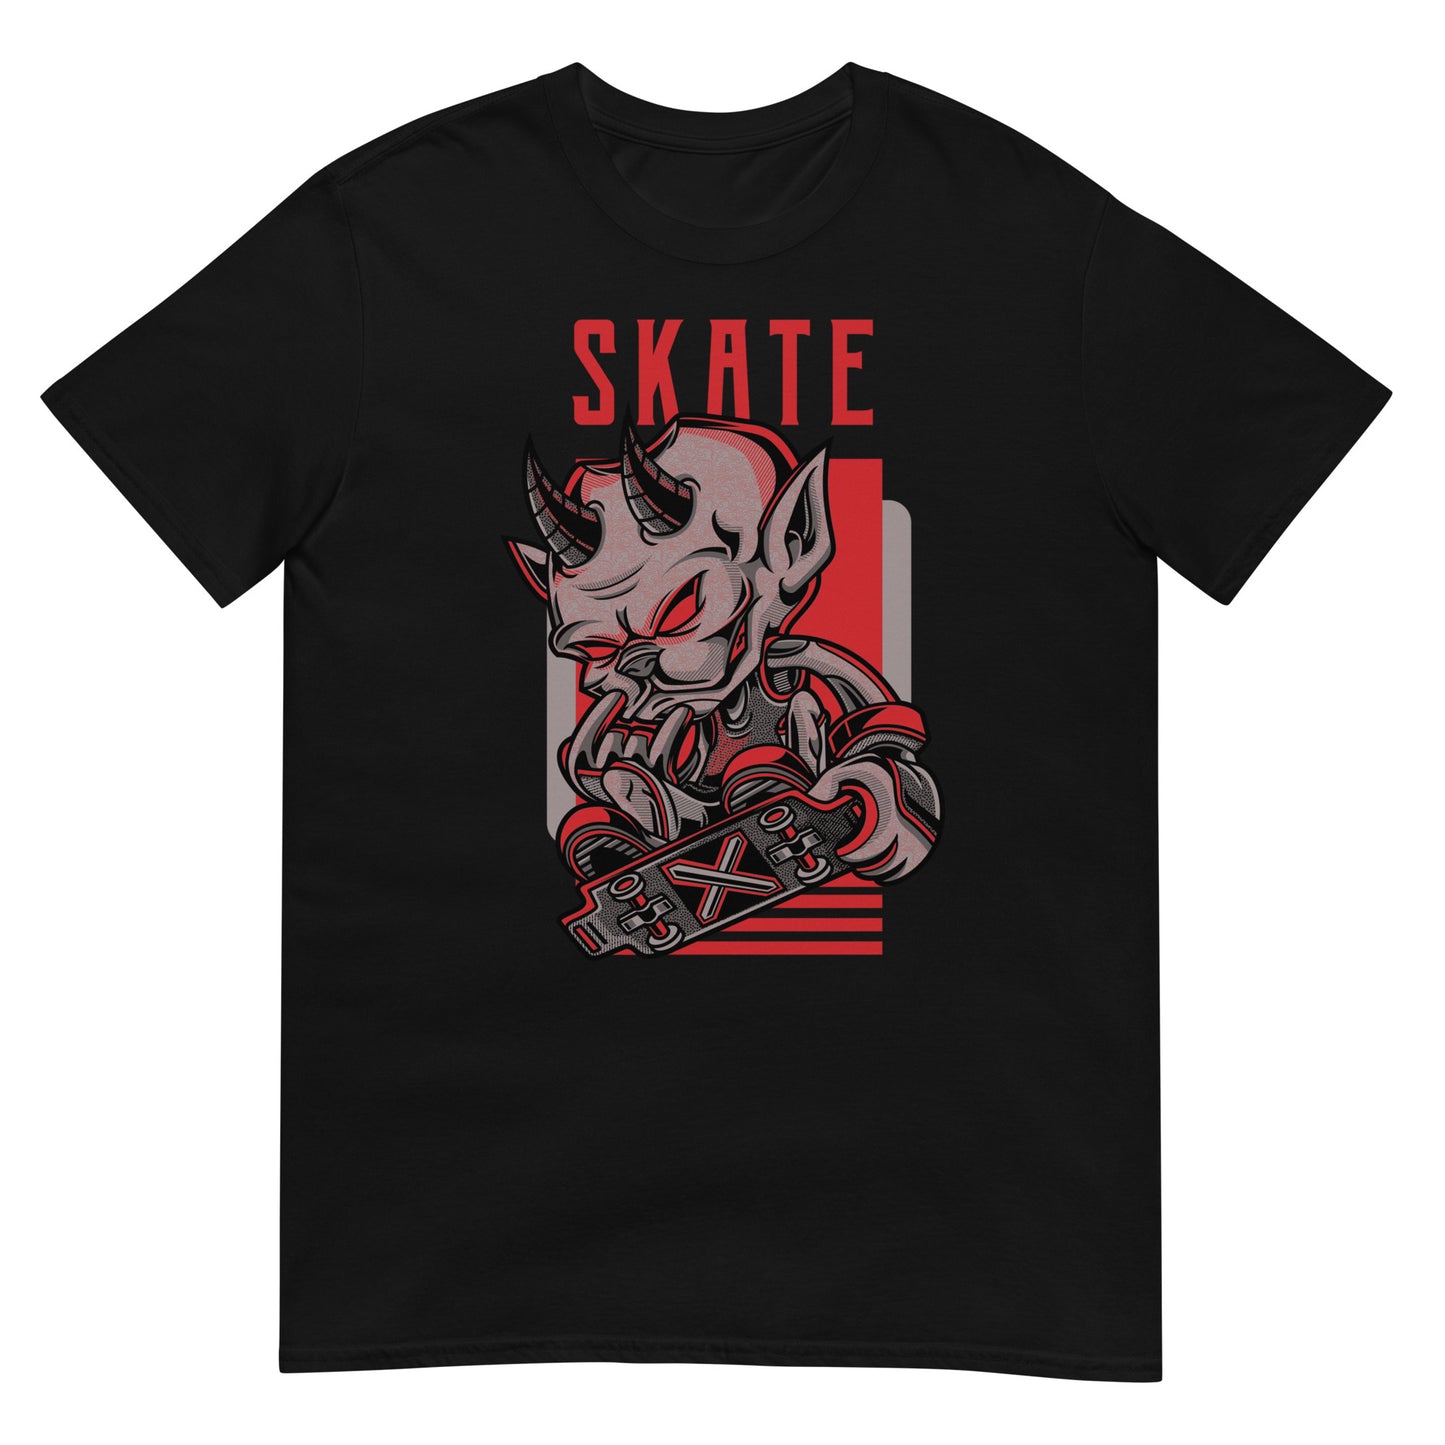 Camiseta Skate